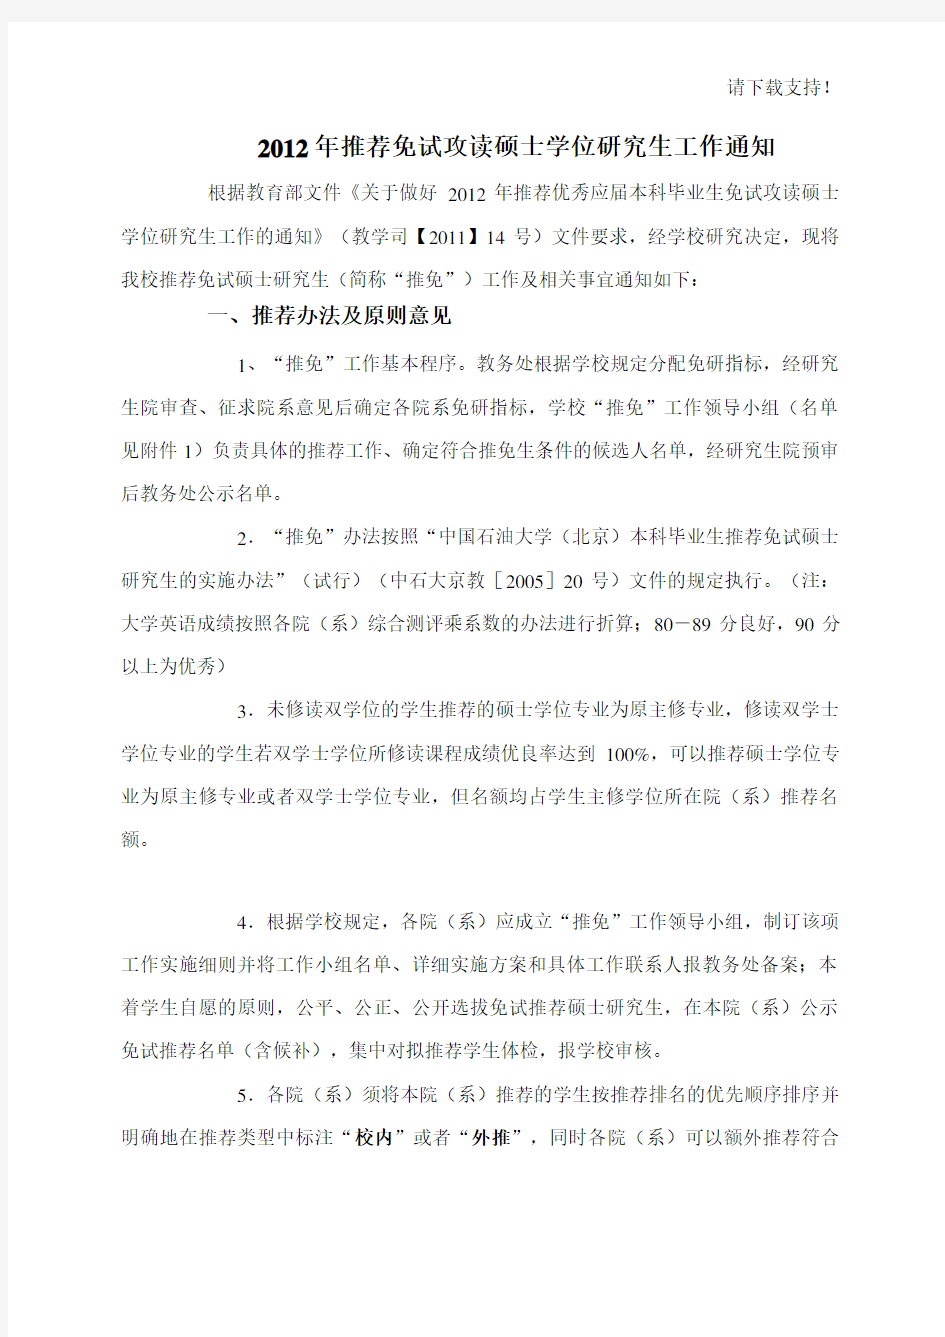 2019年中国石油大学北京推免工作通知20190907(发院系)